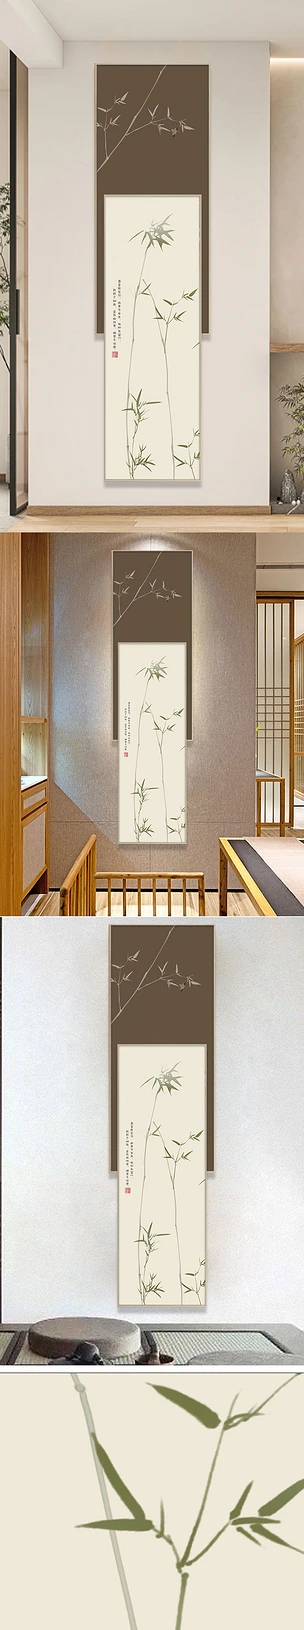 竹报平安玄关画装饰画新中式竹子挂画禅意壁画竖